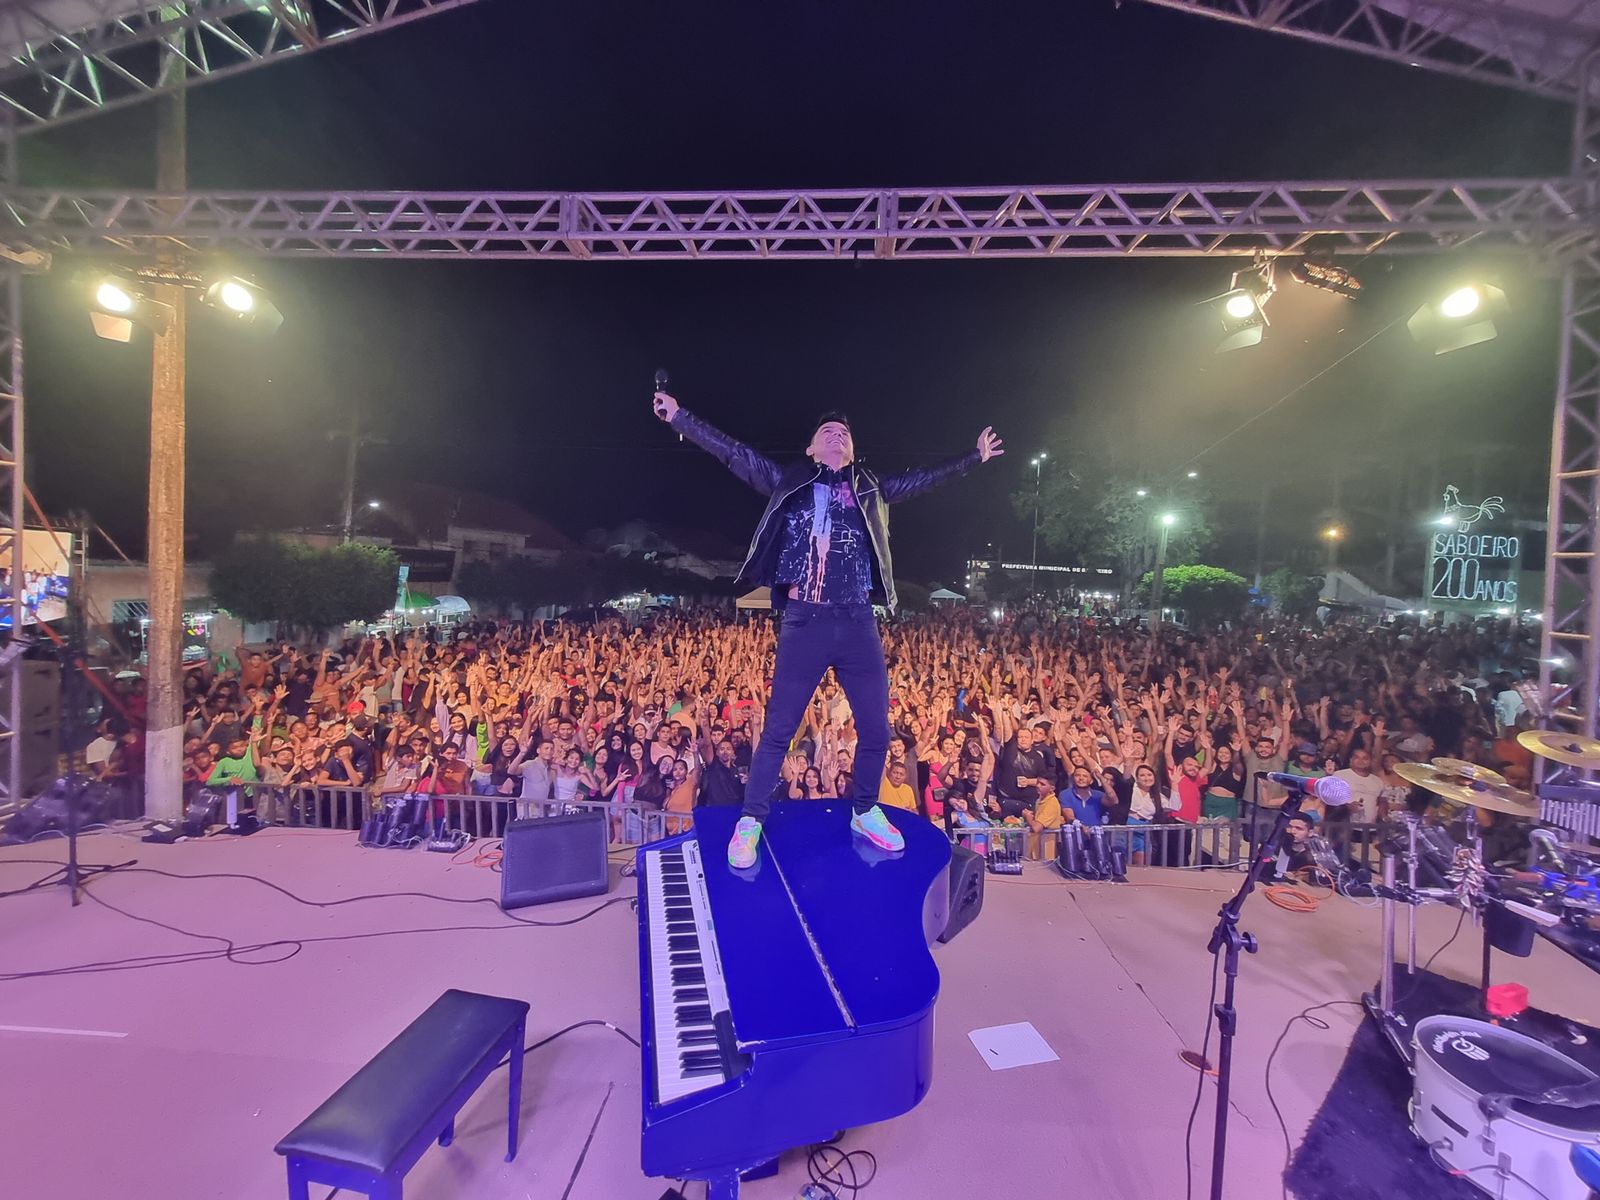 Paulo Rodrigo Pianista surpreende com mega show em Saboeiro